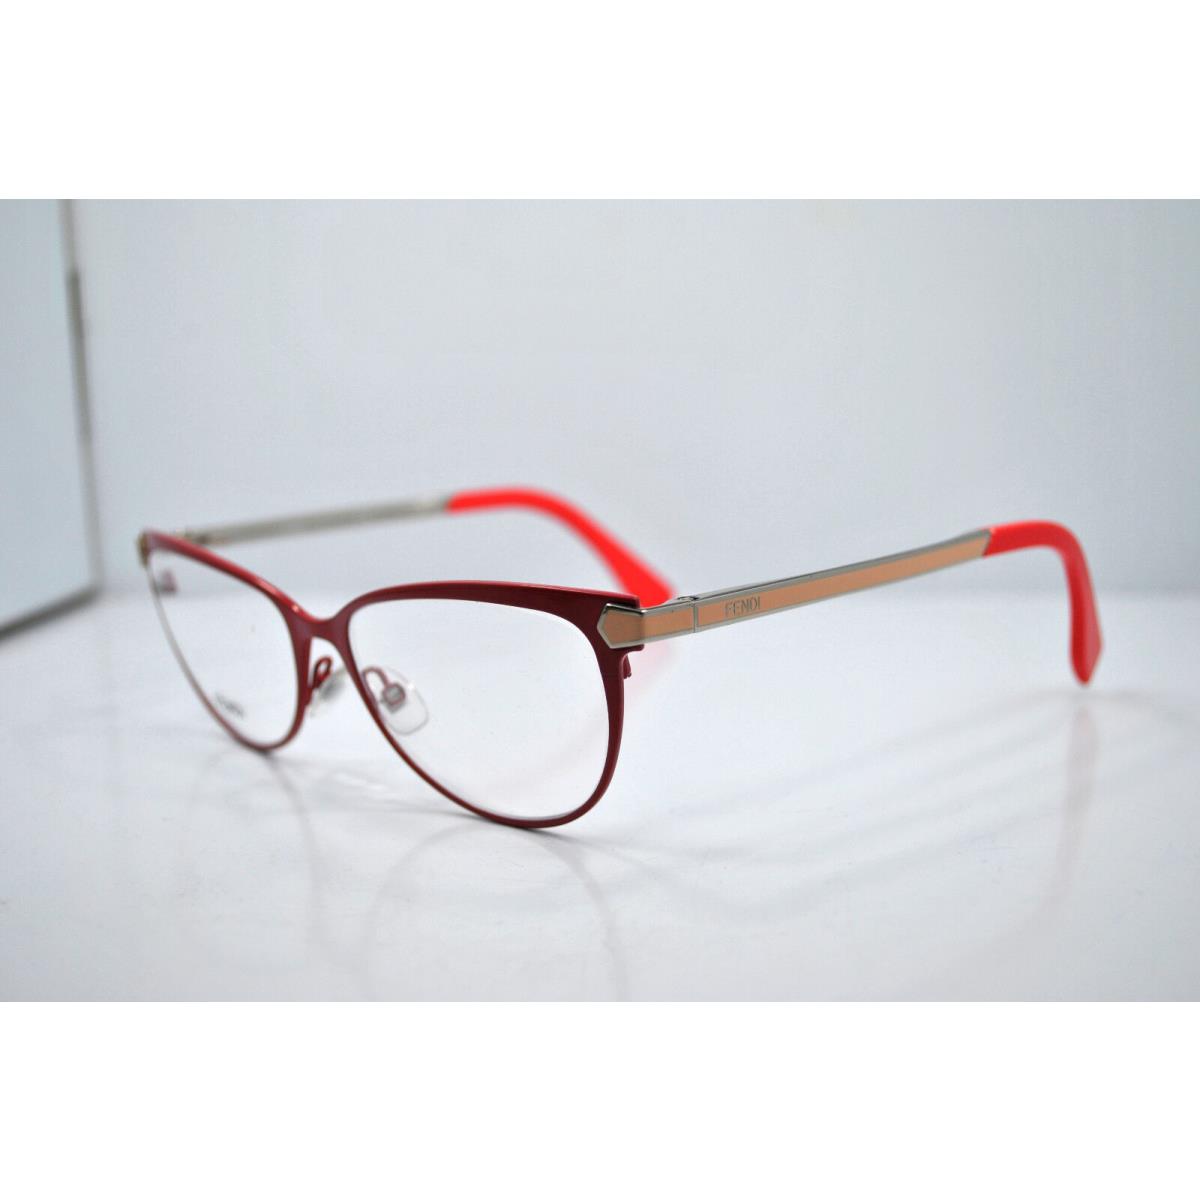 Fendi FF 0024 7VZ Eyeglasses Frames